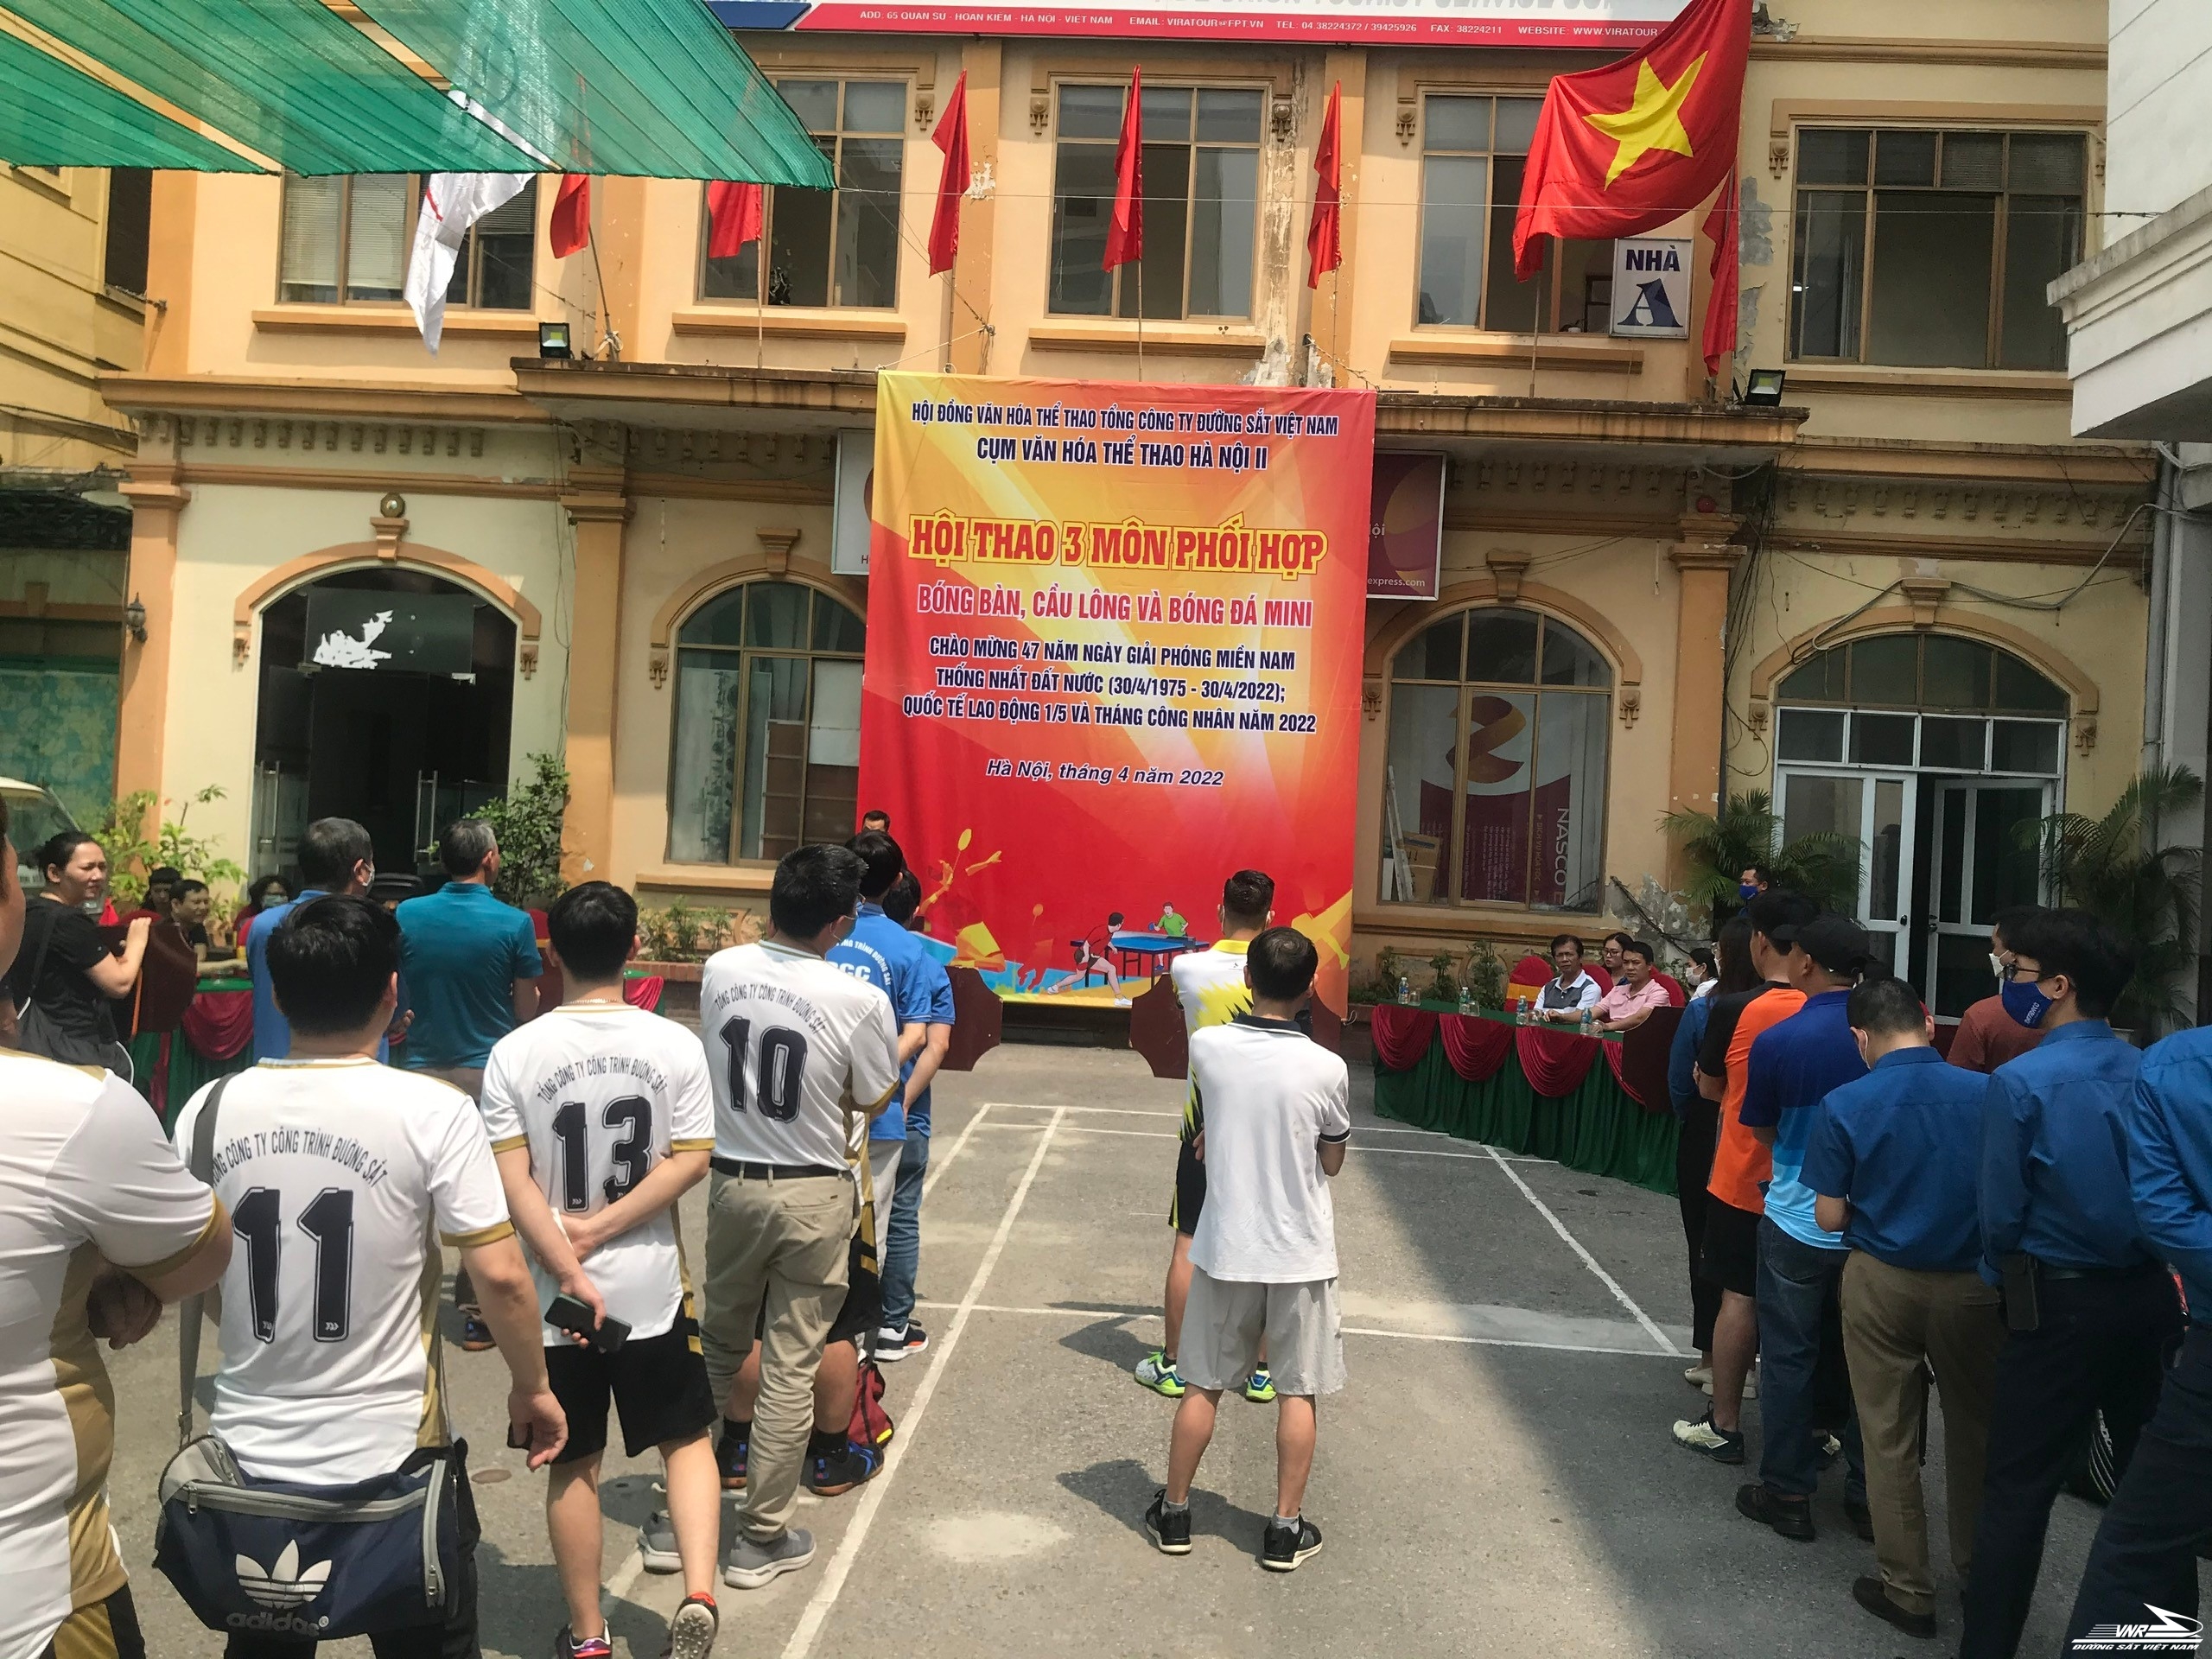 Cụm VHTT Hà Nội 2 tổ chức Hội thao năm 2022